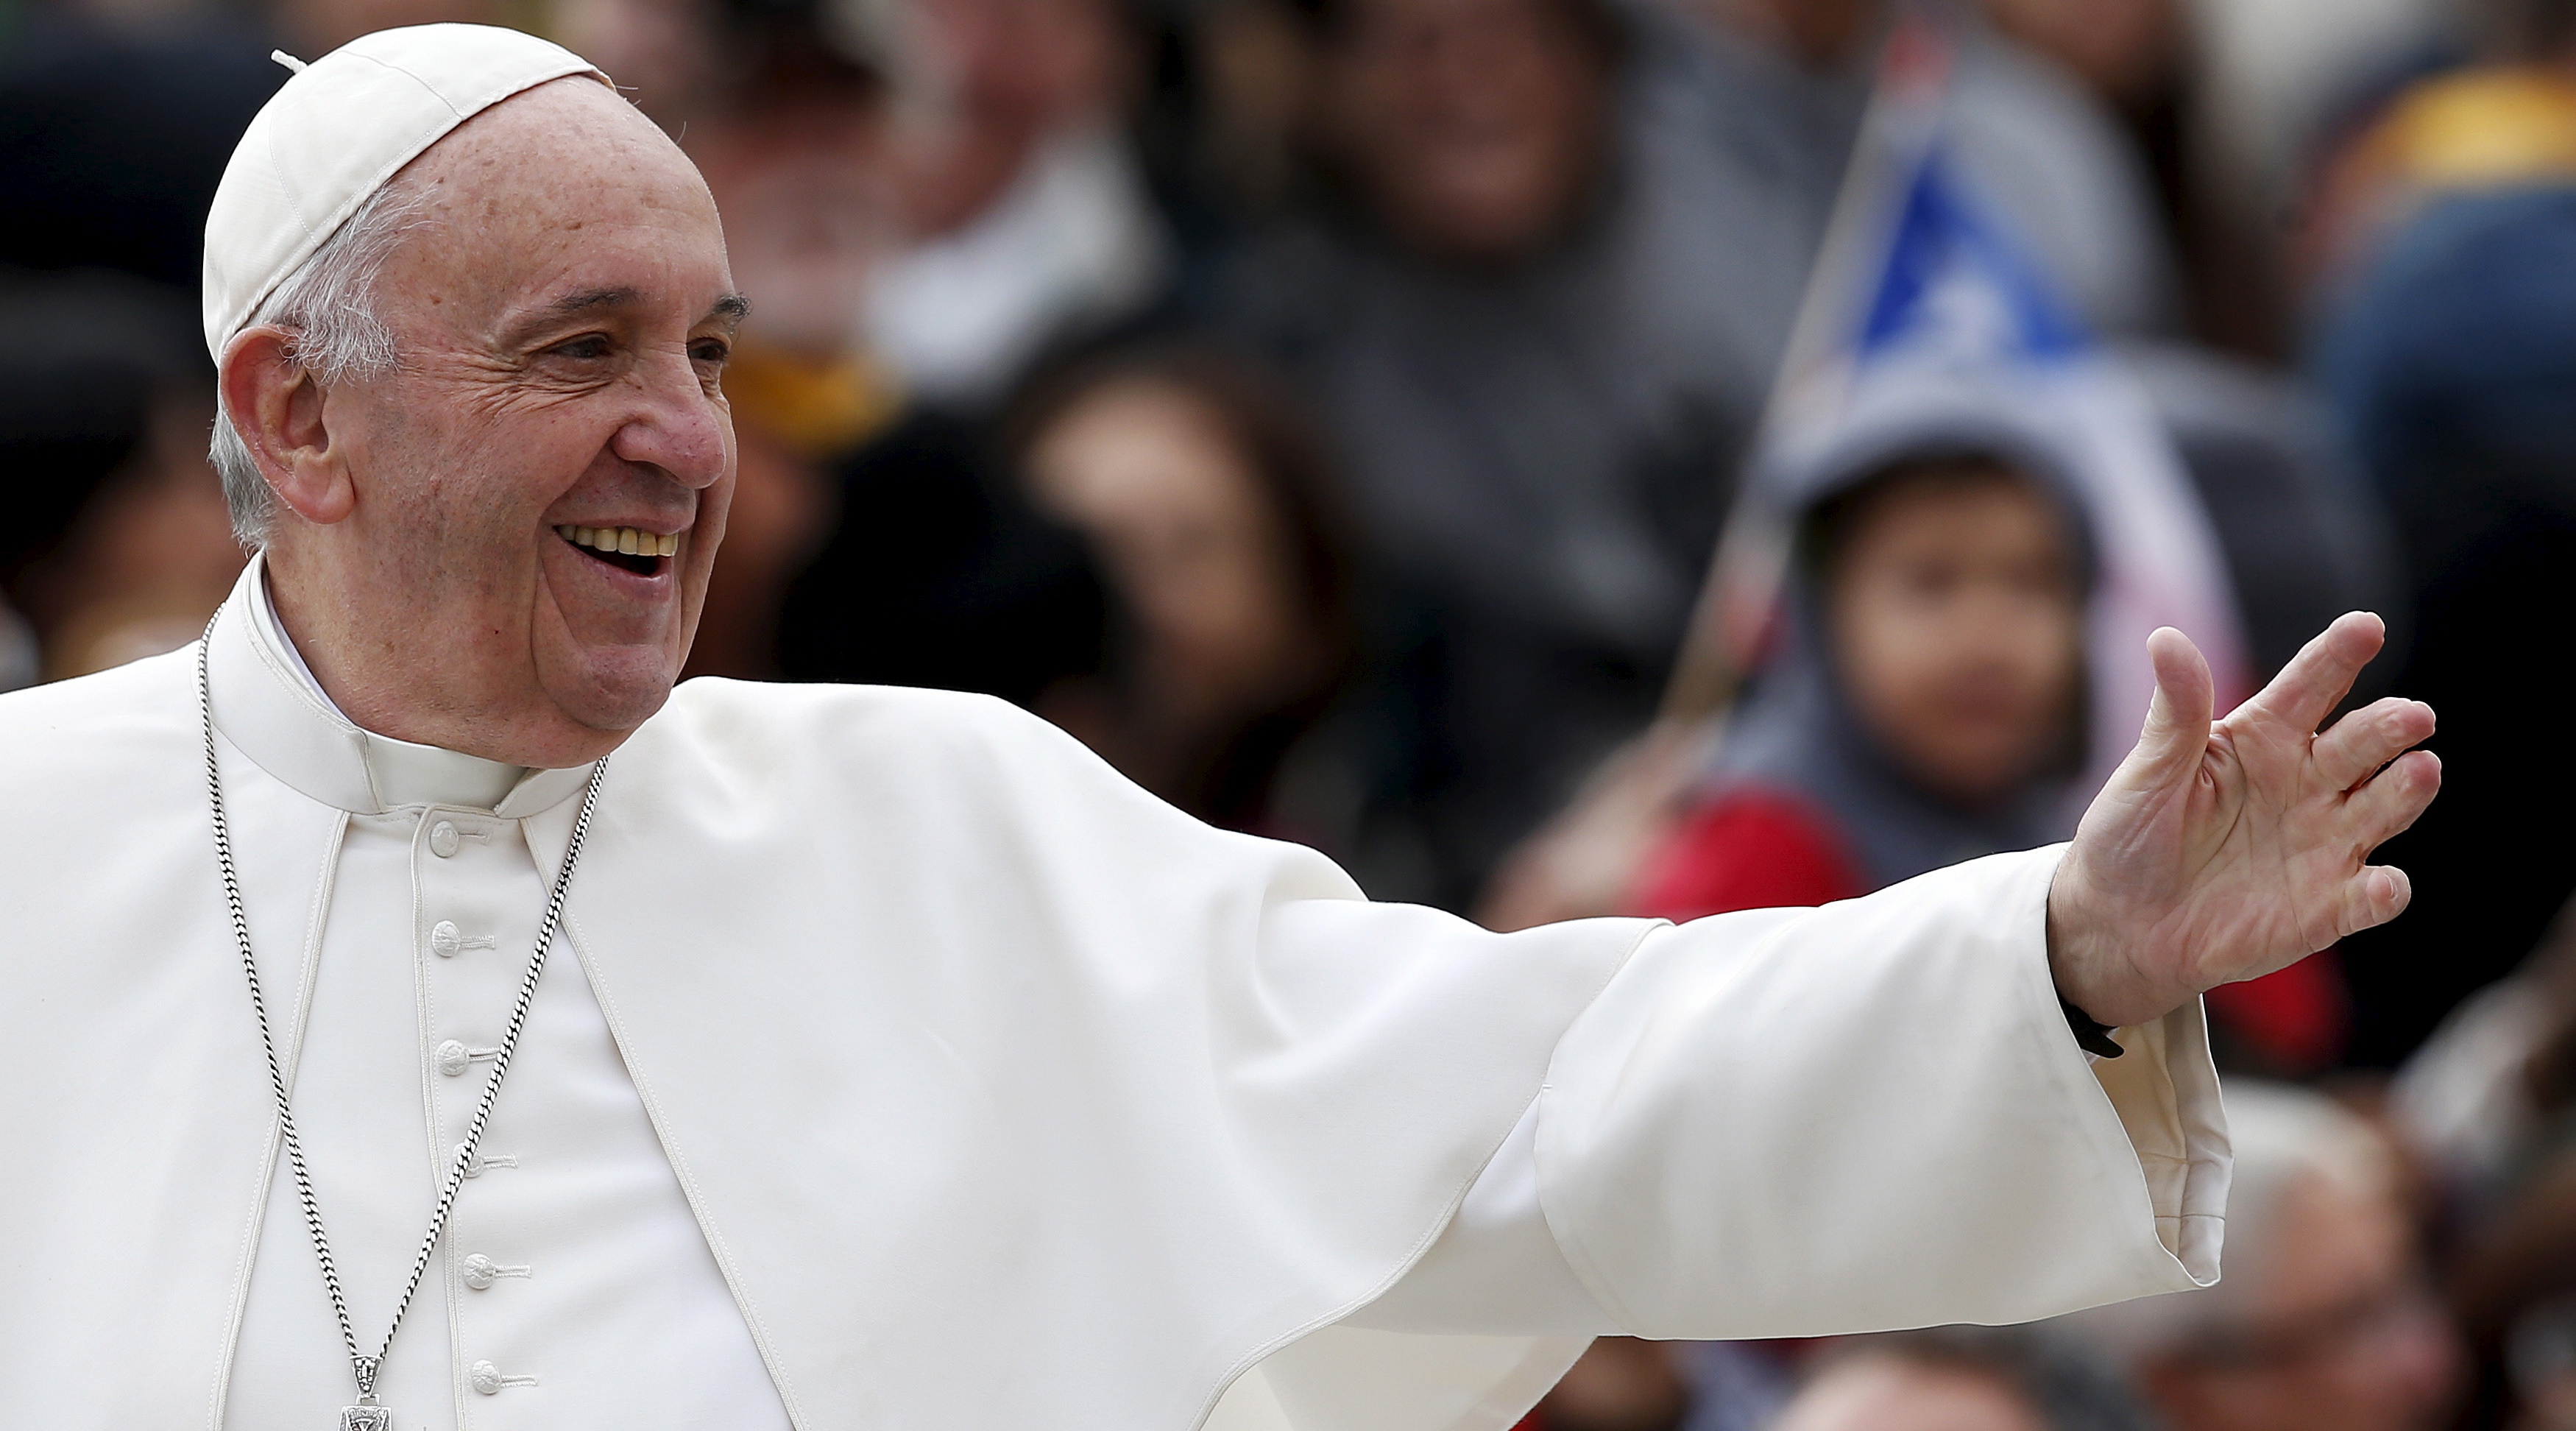 Папа римский с радужным крестом фото